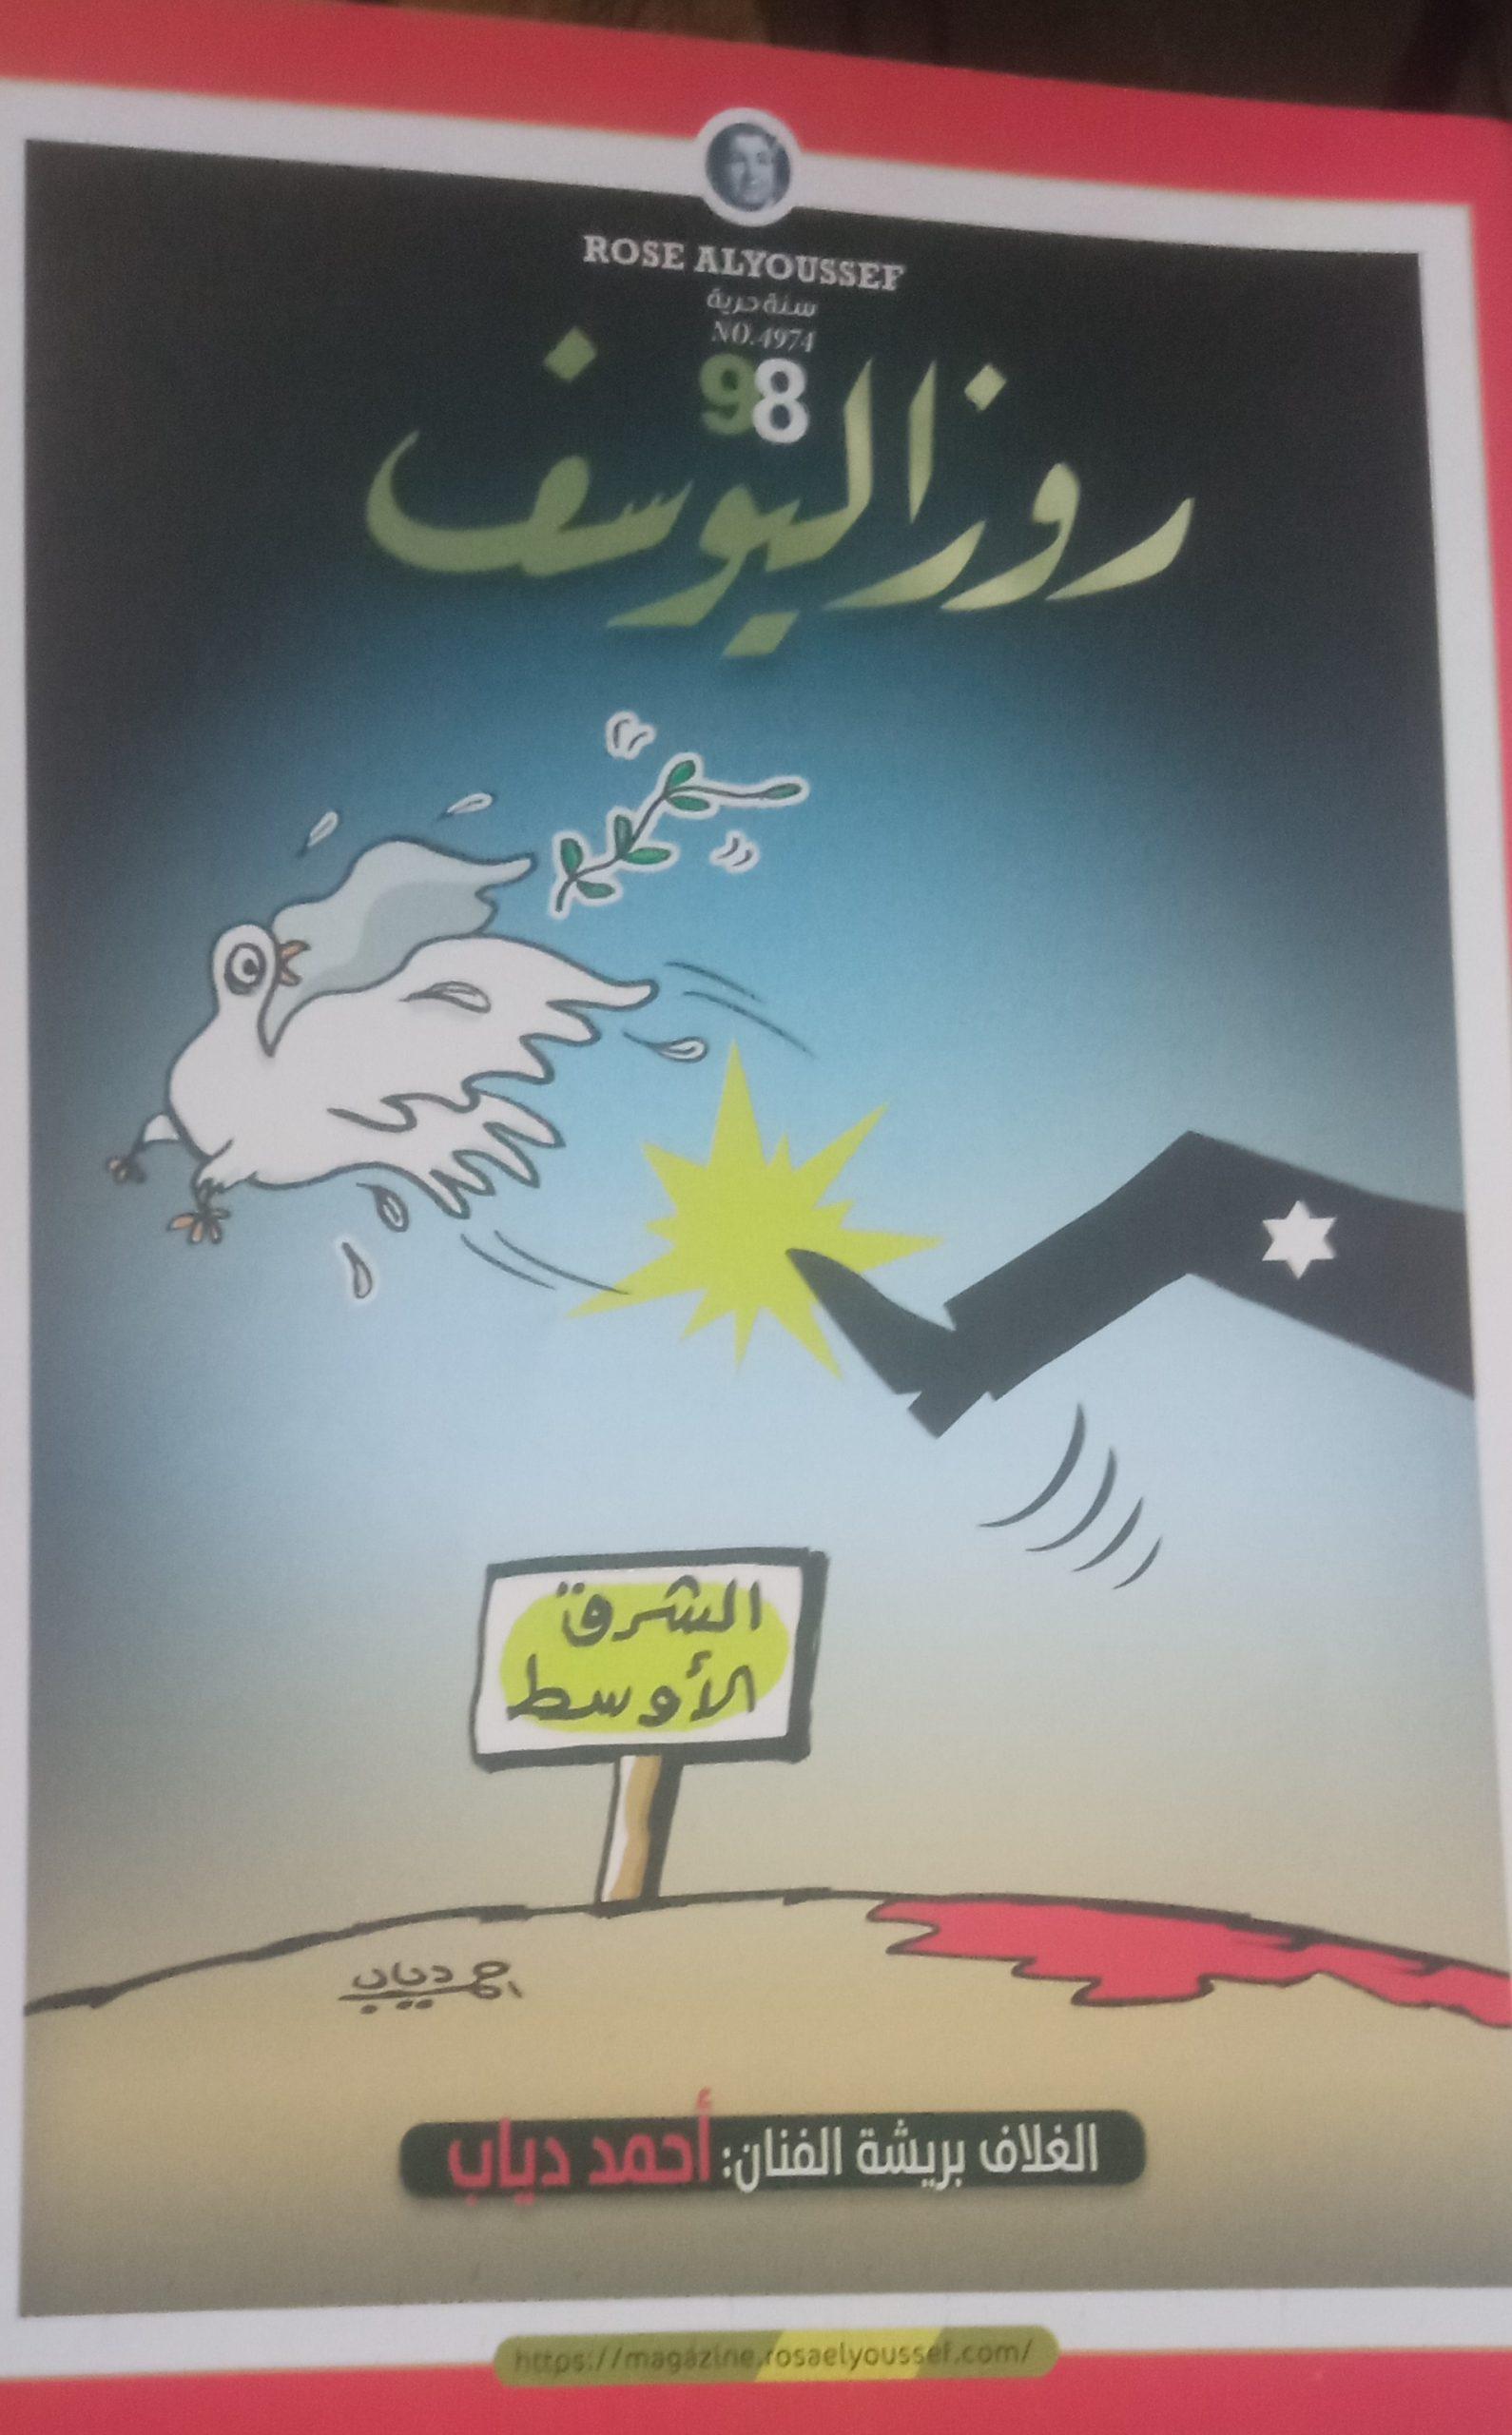 1 - كاريكاتير روز اليوسف، 14 أكتوبر